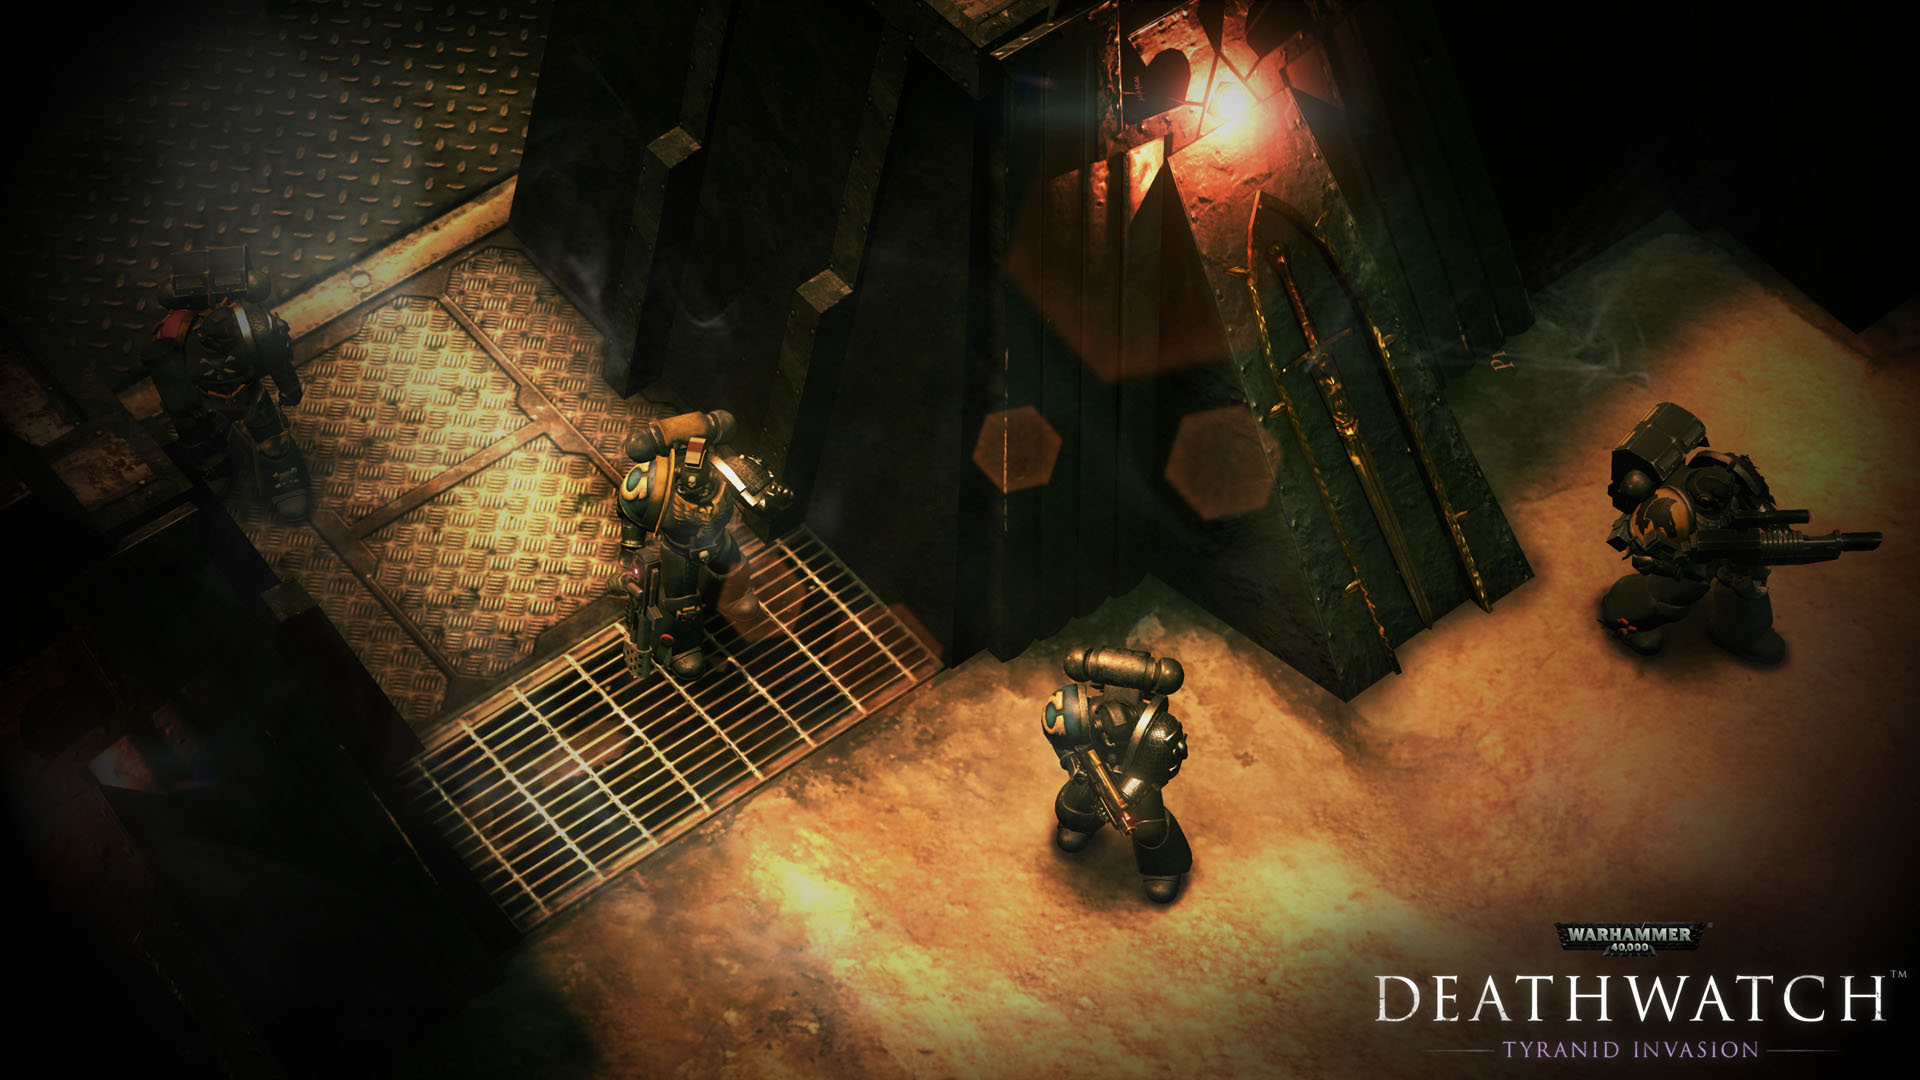 New Warhammer "Deathwatch" Announced - GameSpot